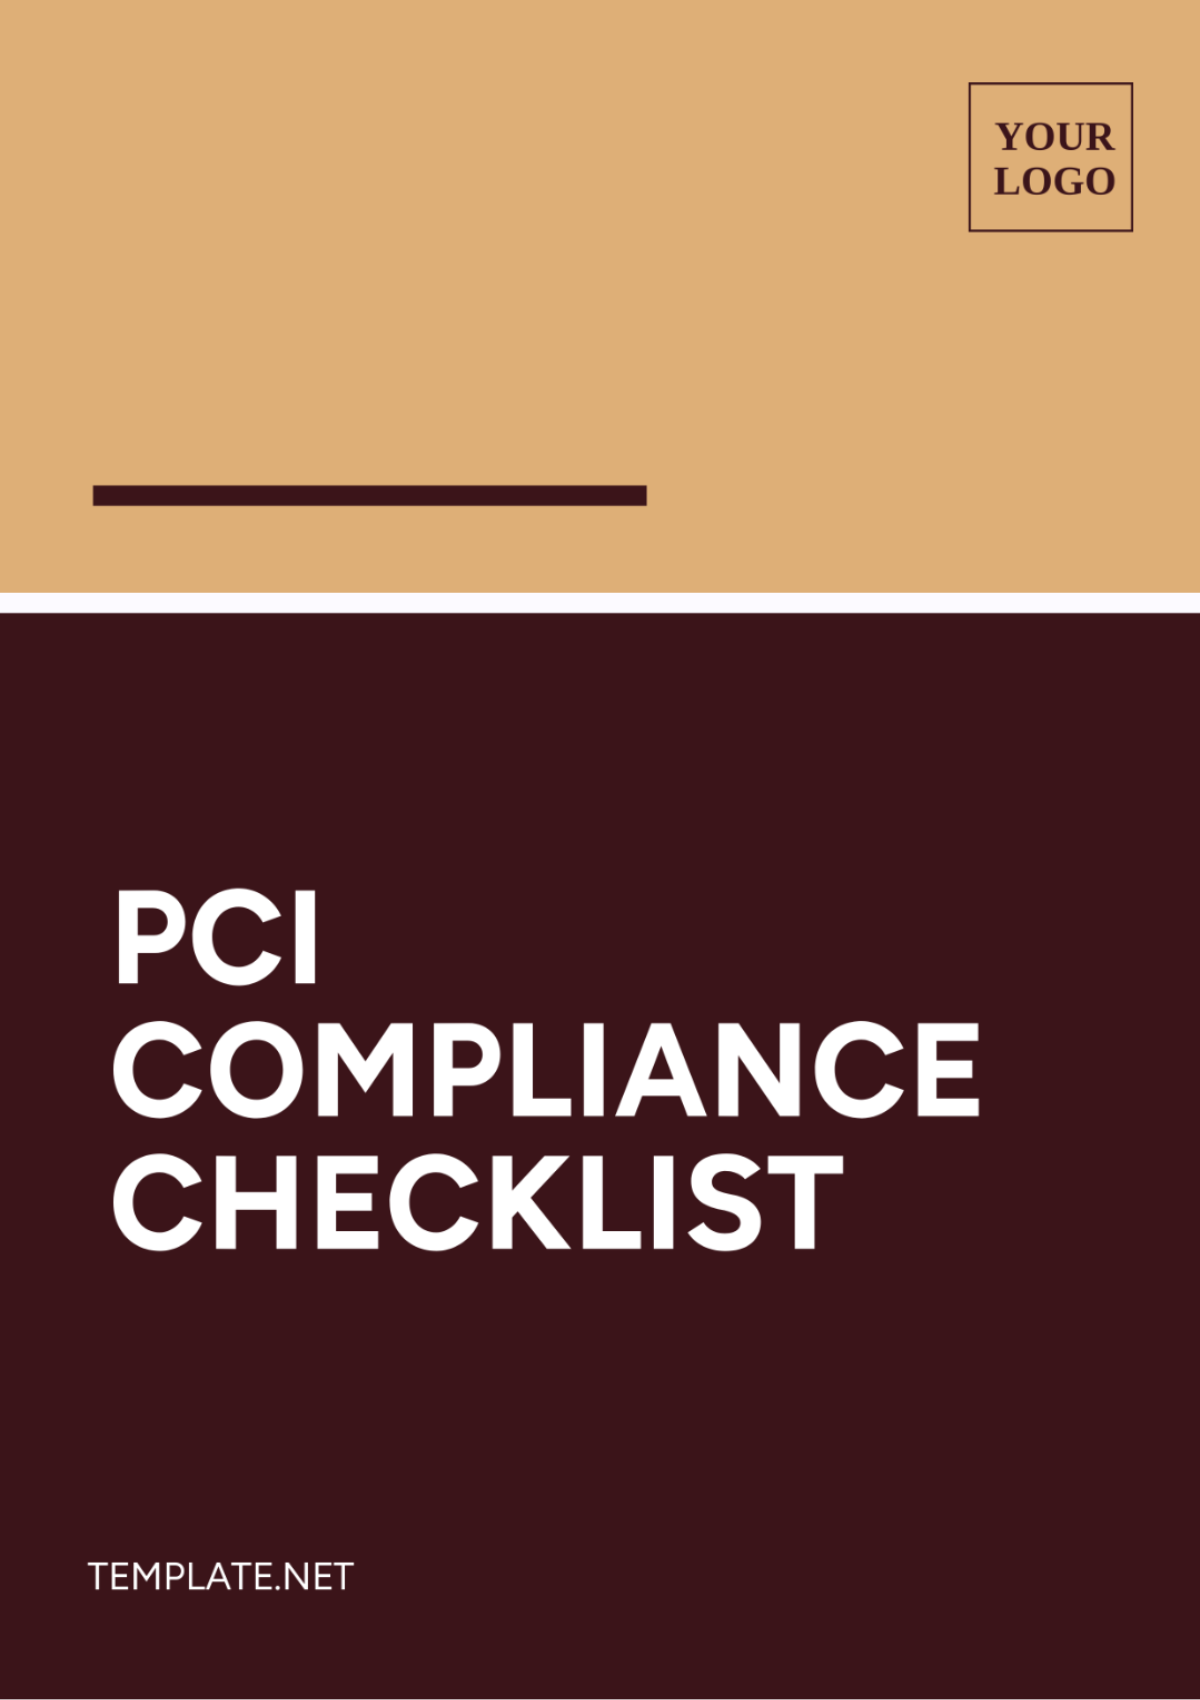 PCI Compliance Checklist Template